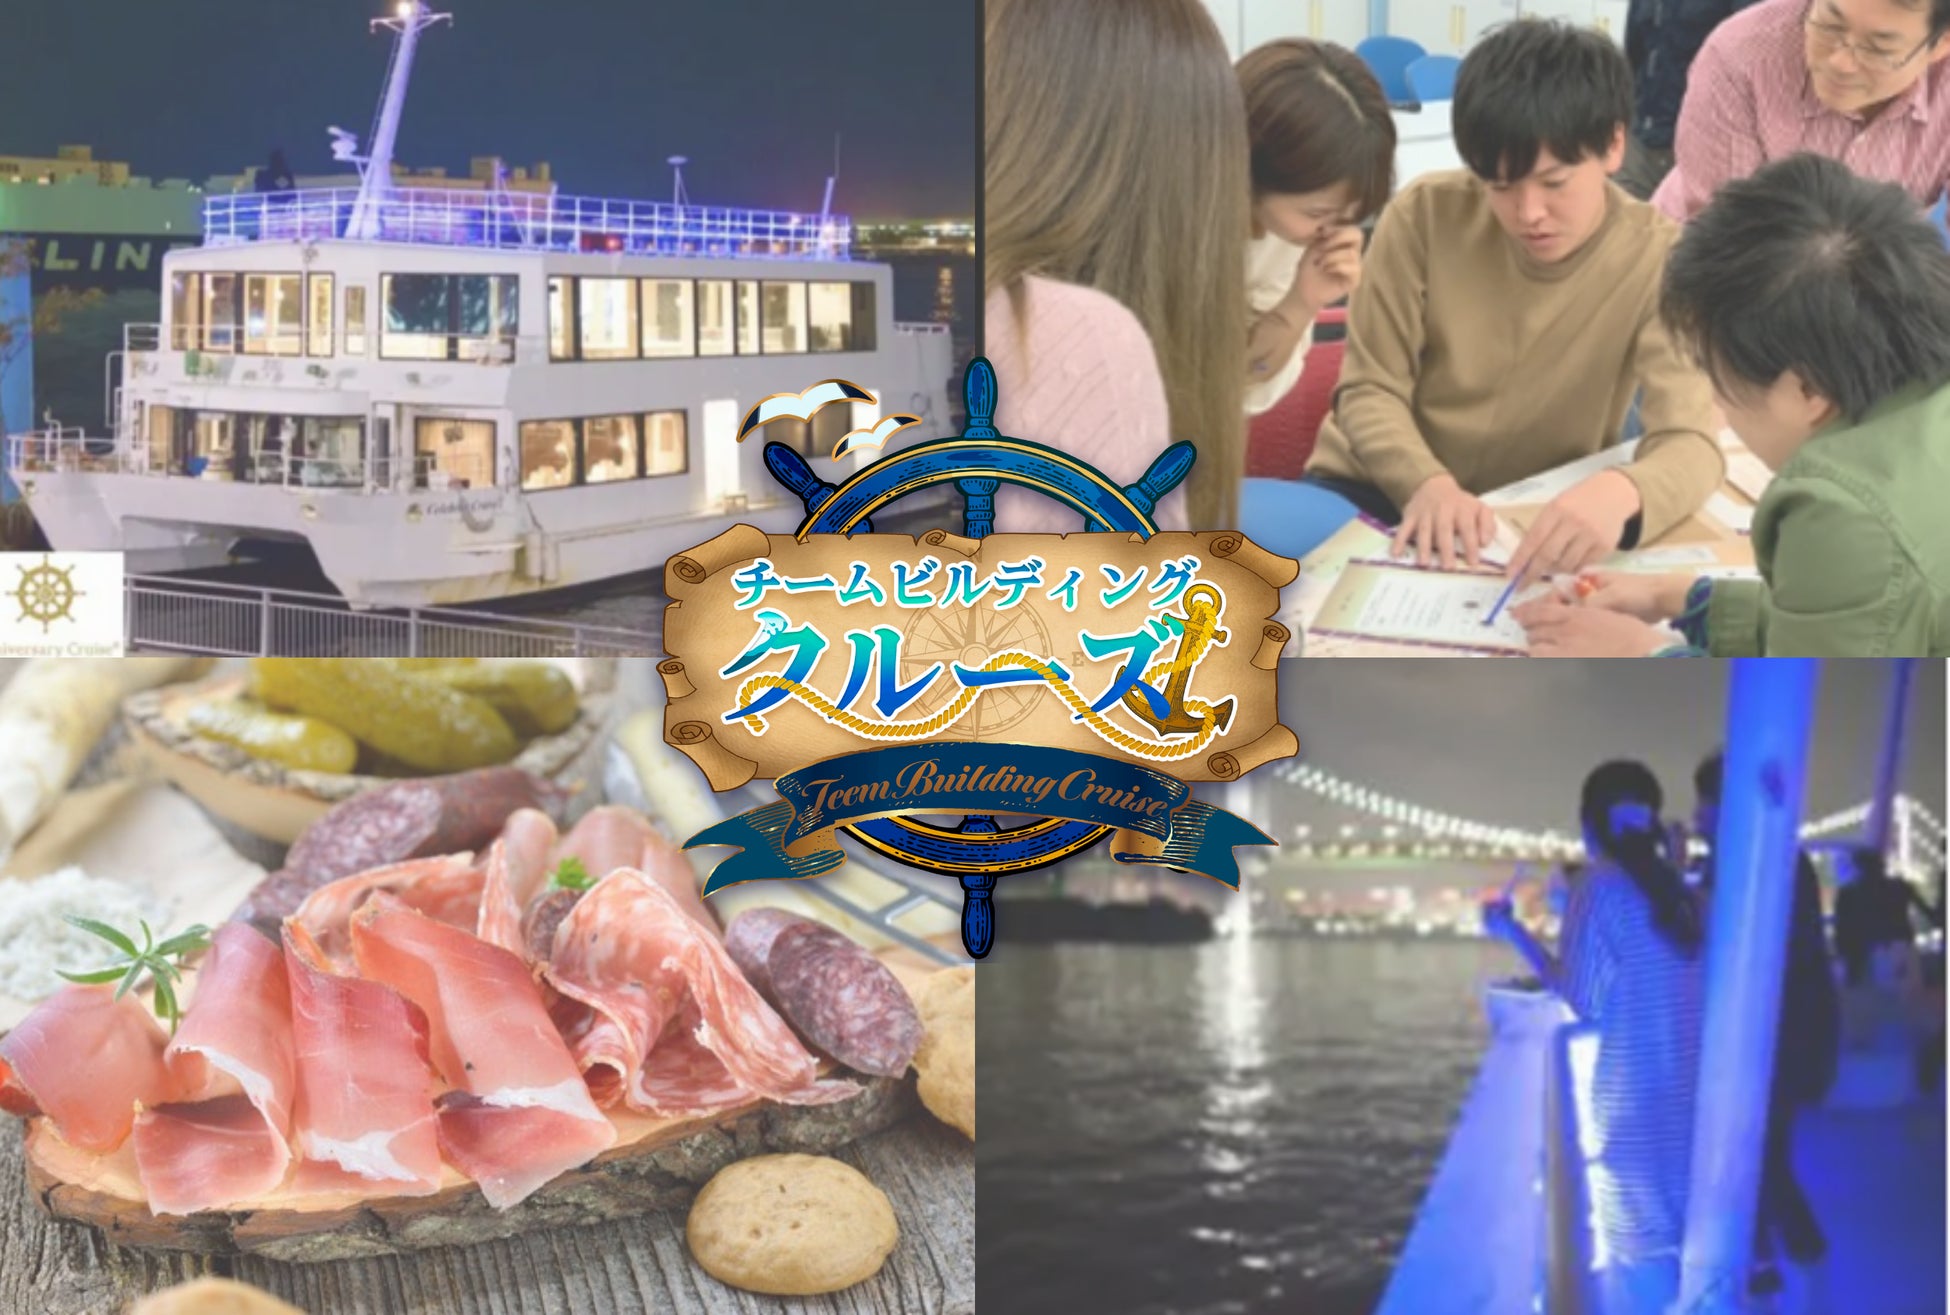 東京湾や横浜港から景色を一望できるクルーズ船でお食事と謎解き・クイズゲームを楽しむ企業向けサービスが登場。　クルージング×アクティビティ「チームビルディングクルーズ」で極上のクルーズパーティーを。